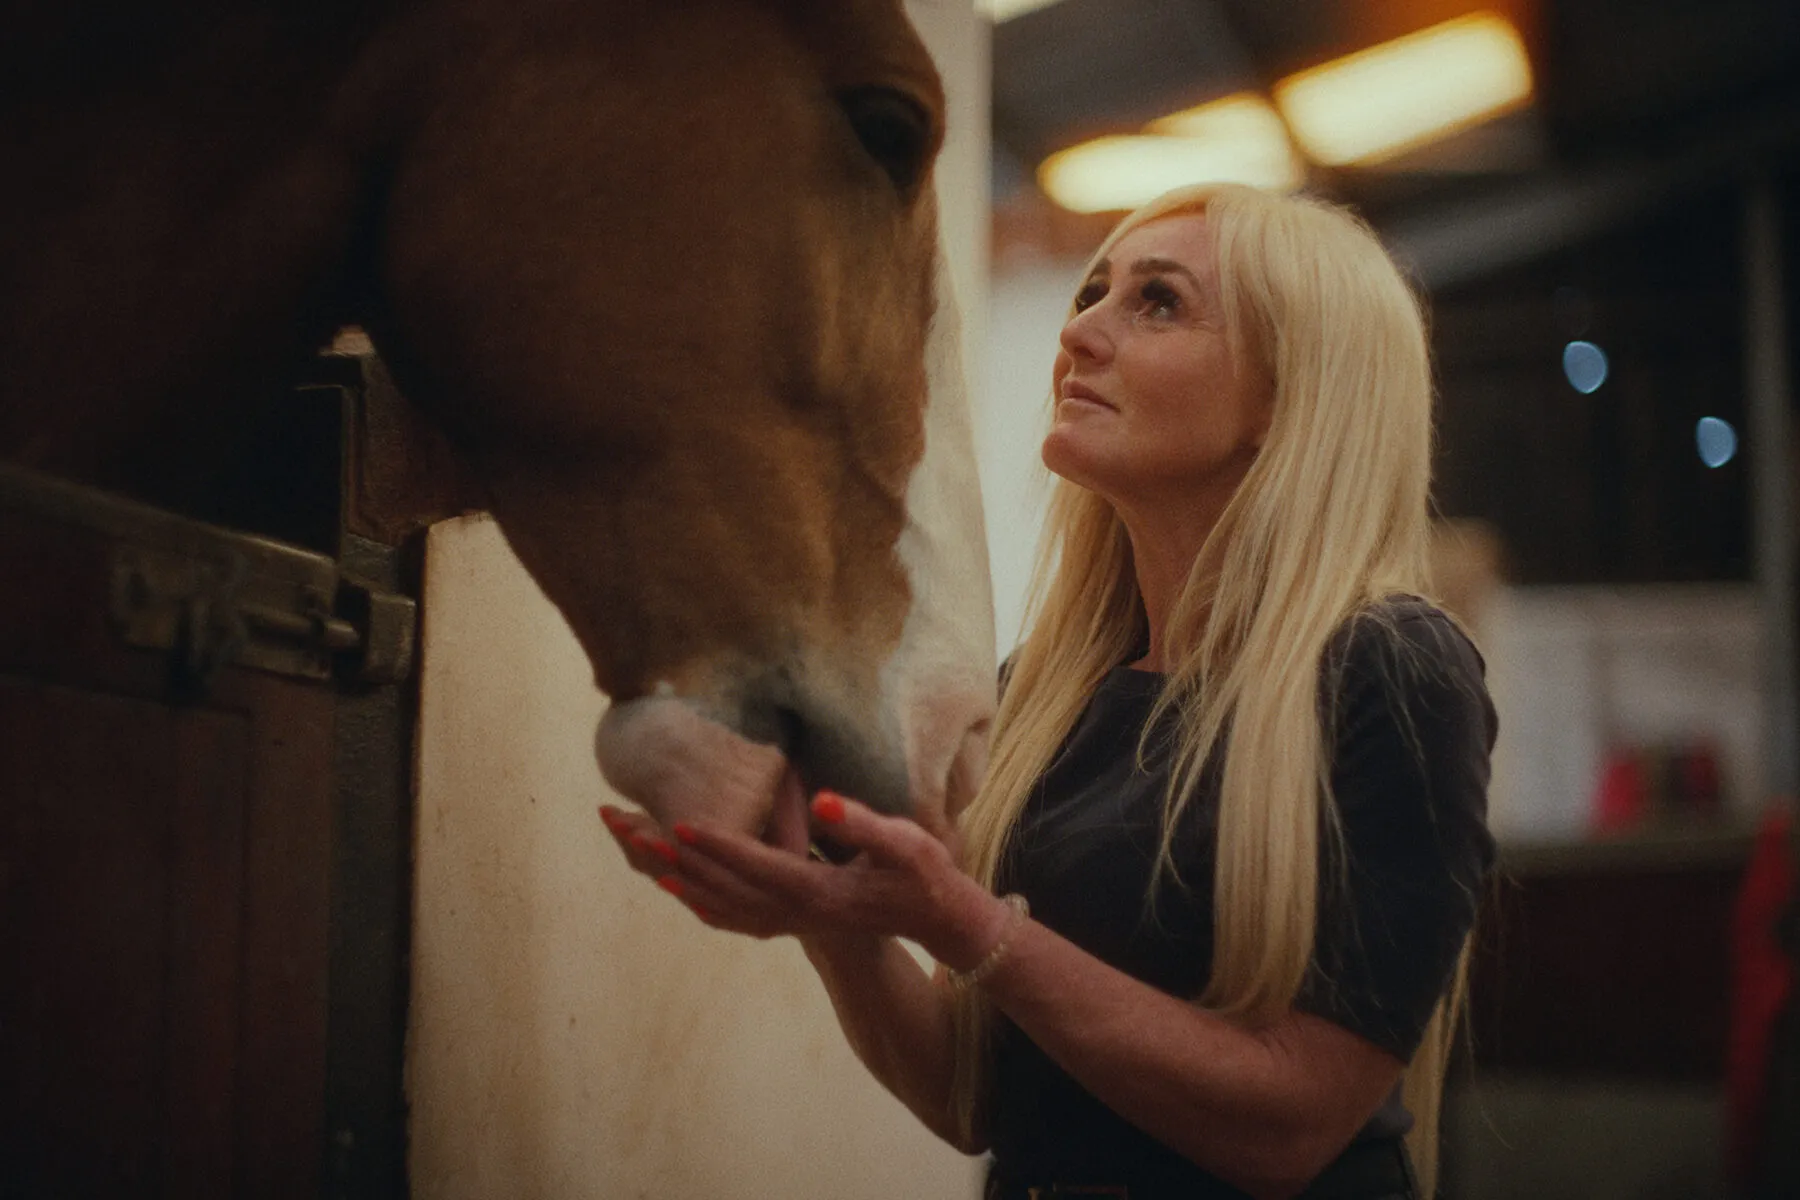 Kelly feeds a horse